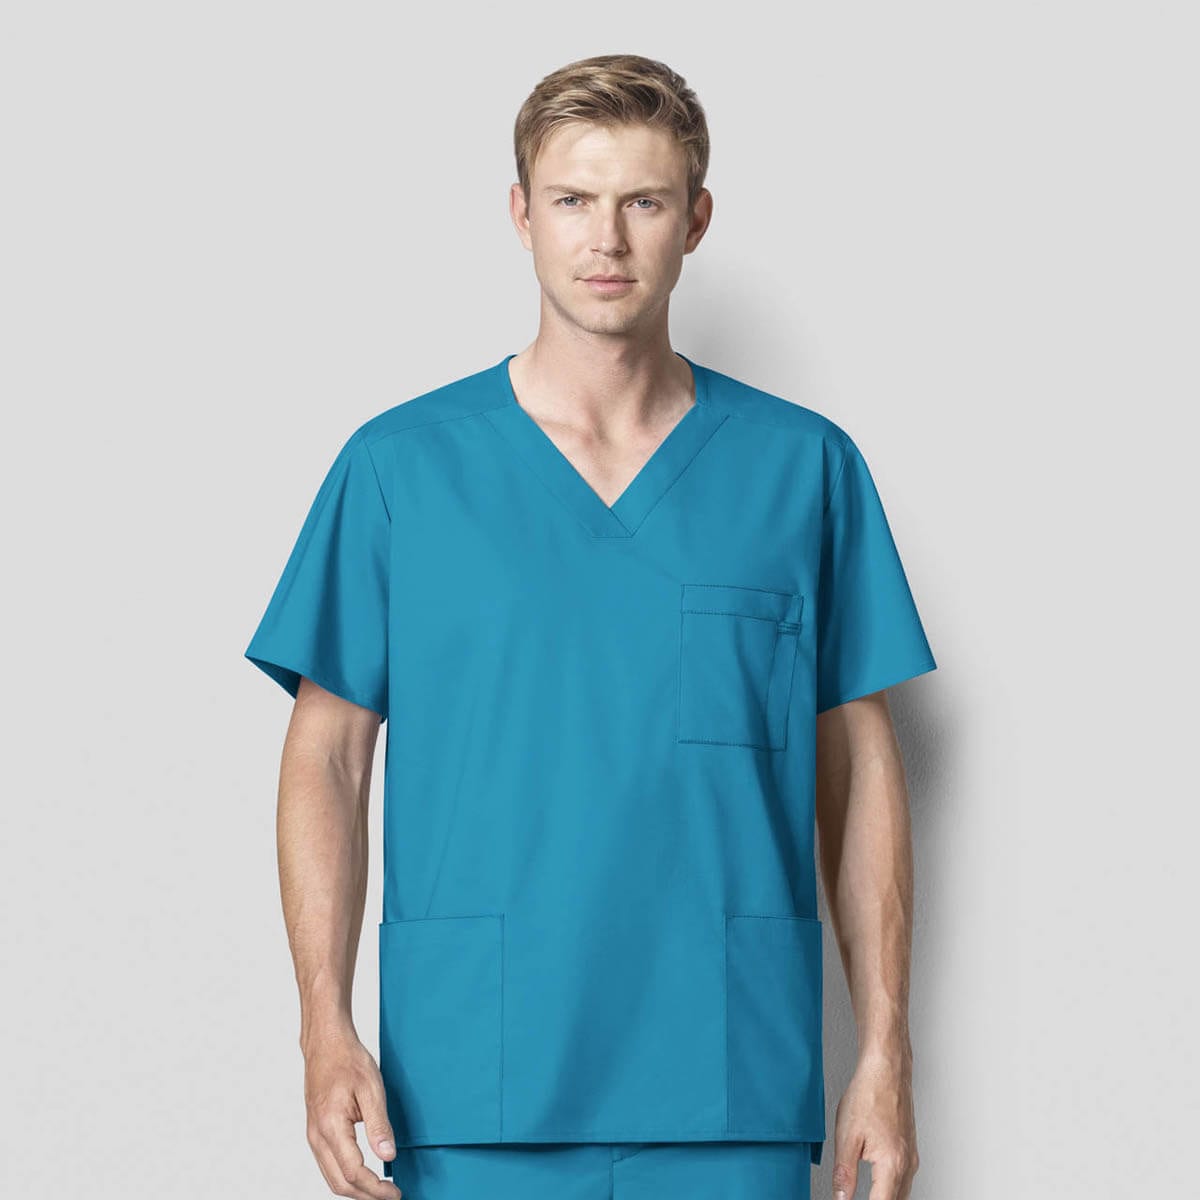 VOGRYE Men's Medical Uniform Workwear V-Neck Scrub Top with Pockets 